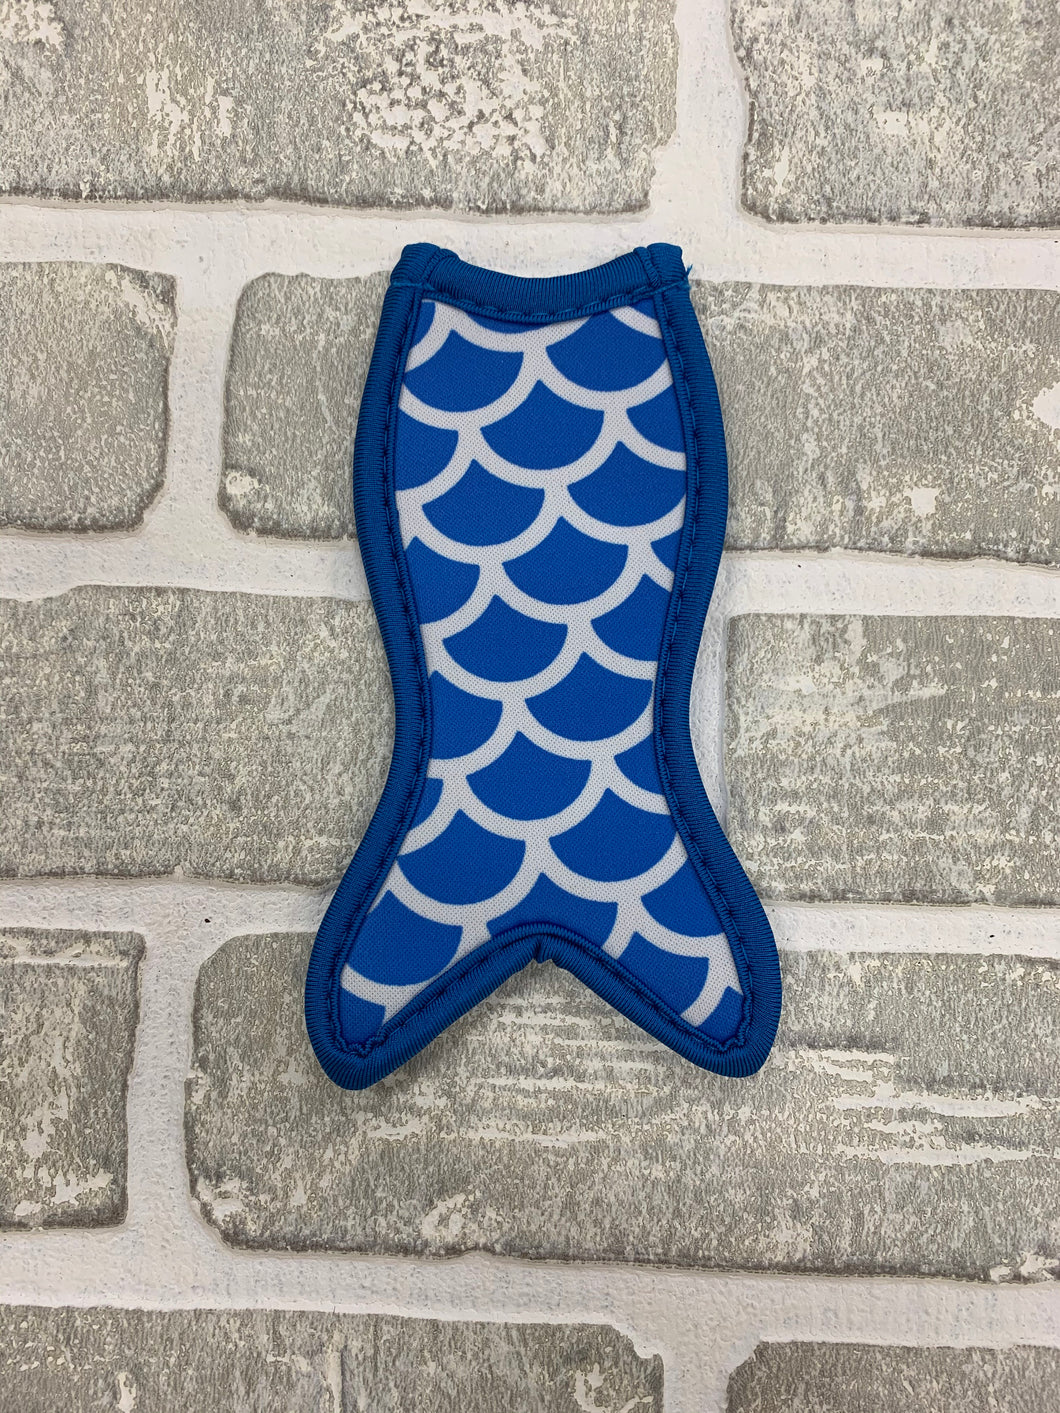 Royal blue mermaid popsicle holder blanks